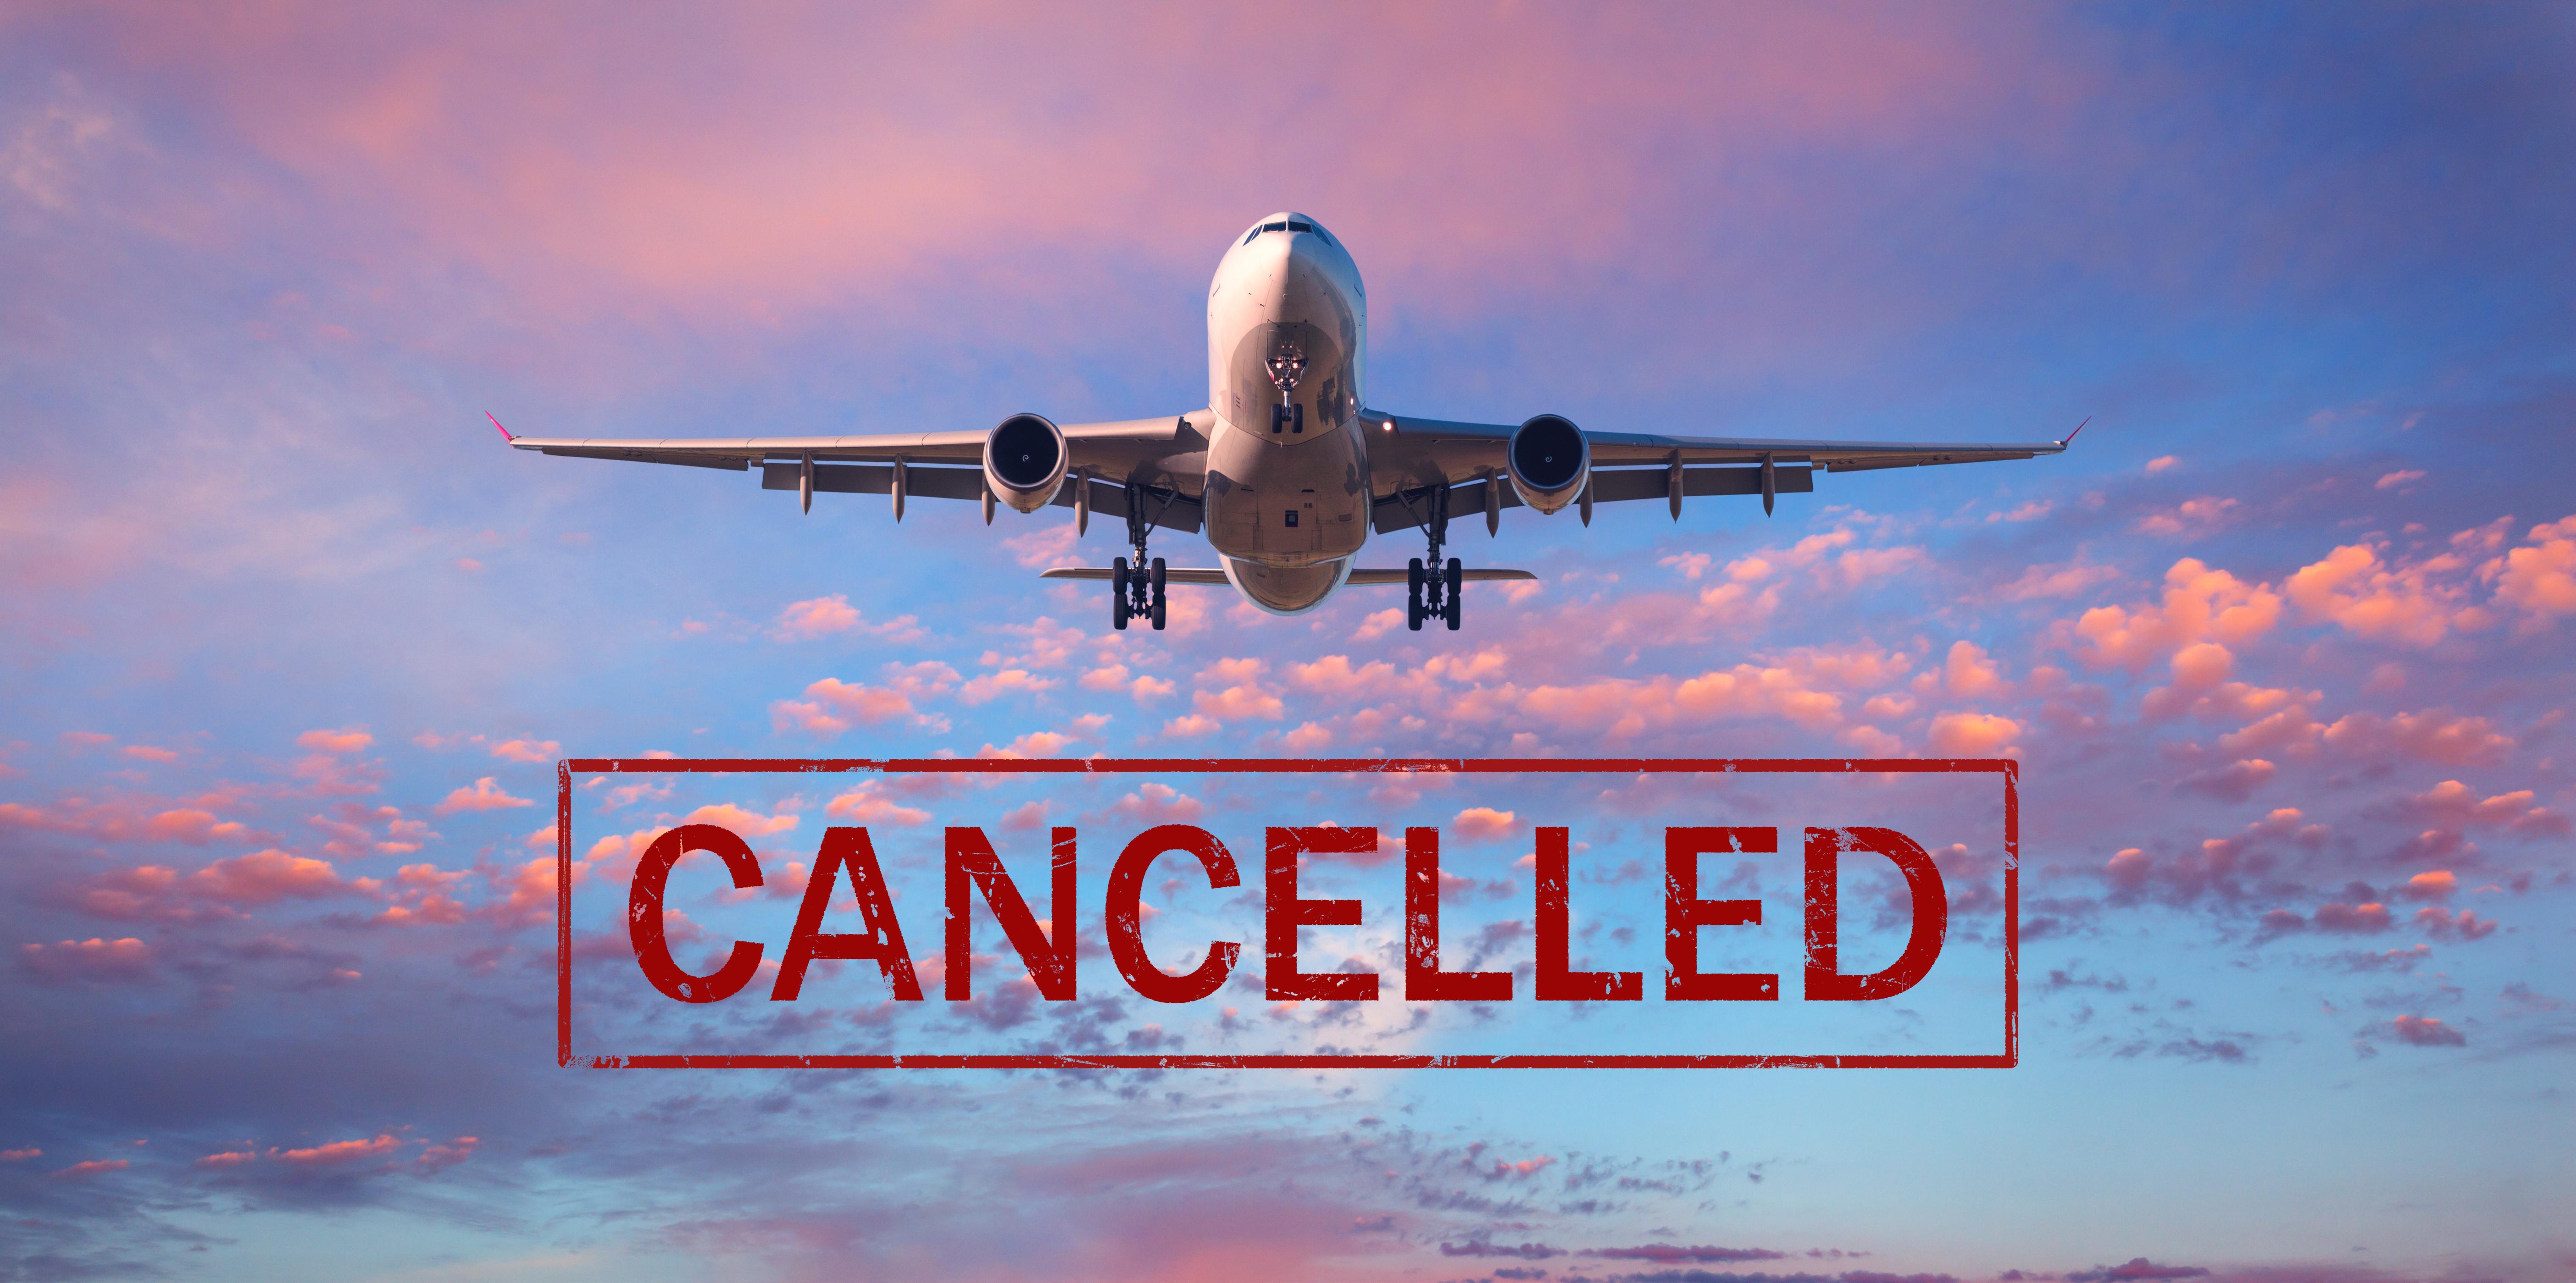 Veşti proaste pentru mii de pasageri! Zeci de zboruri anulate pe 20 de rute în perioada verii, inclusiv din București